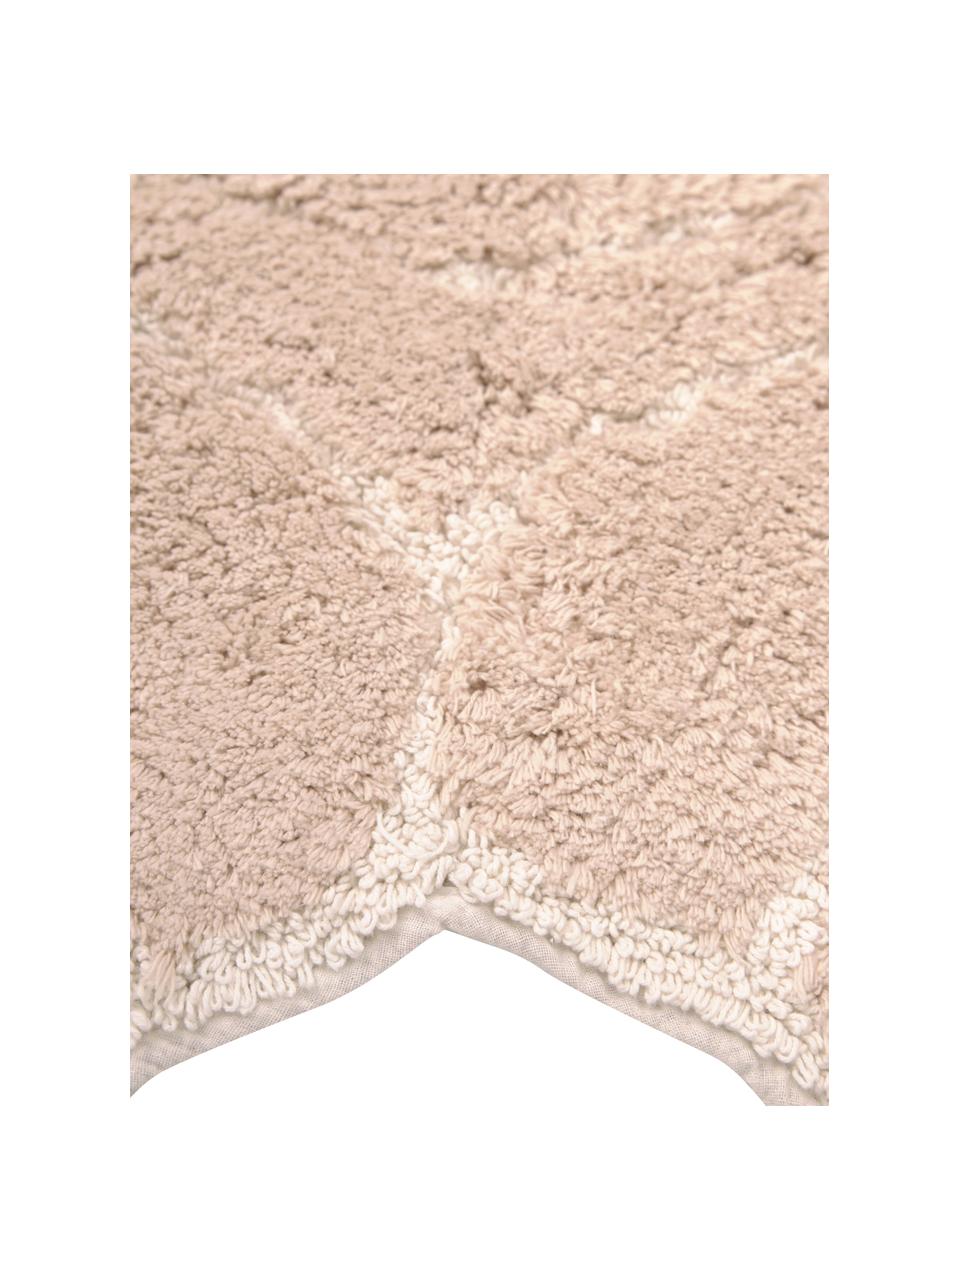 Tappeto bagno in cotone ecru Soft, 100% cotone, Ecru, bianco, Larg. 70 x Lung. 130 cm